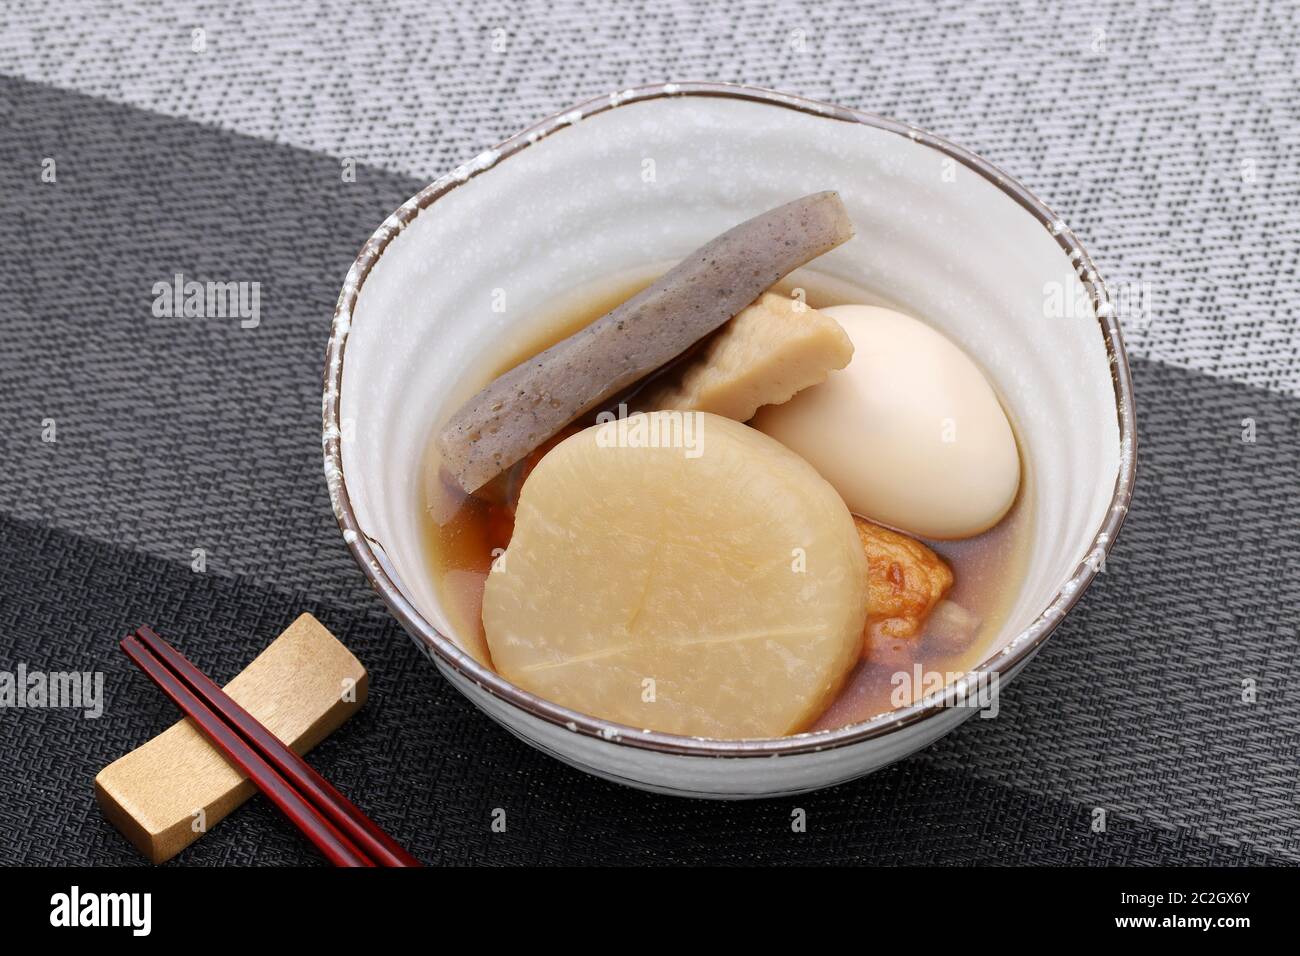 Cuisine japonaise, Oden dans un bol sur table noire Banque D'Images